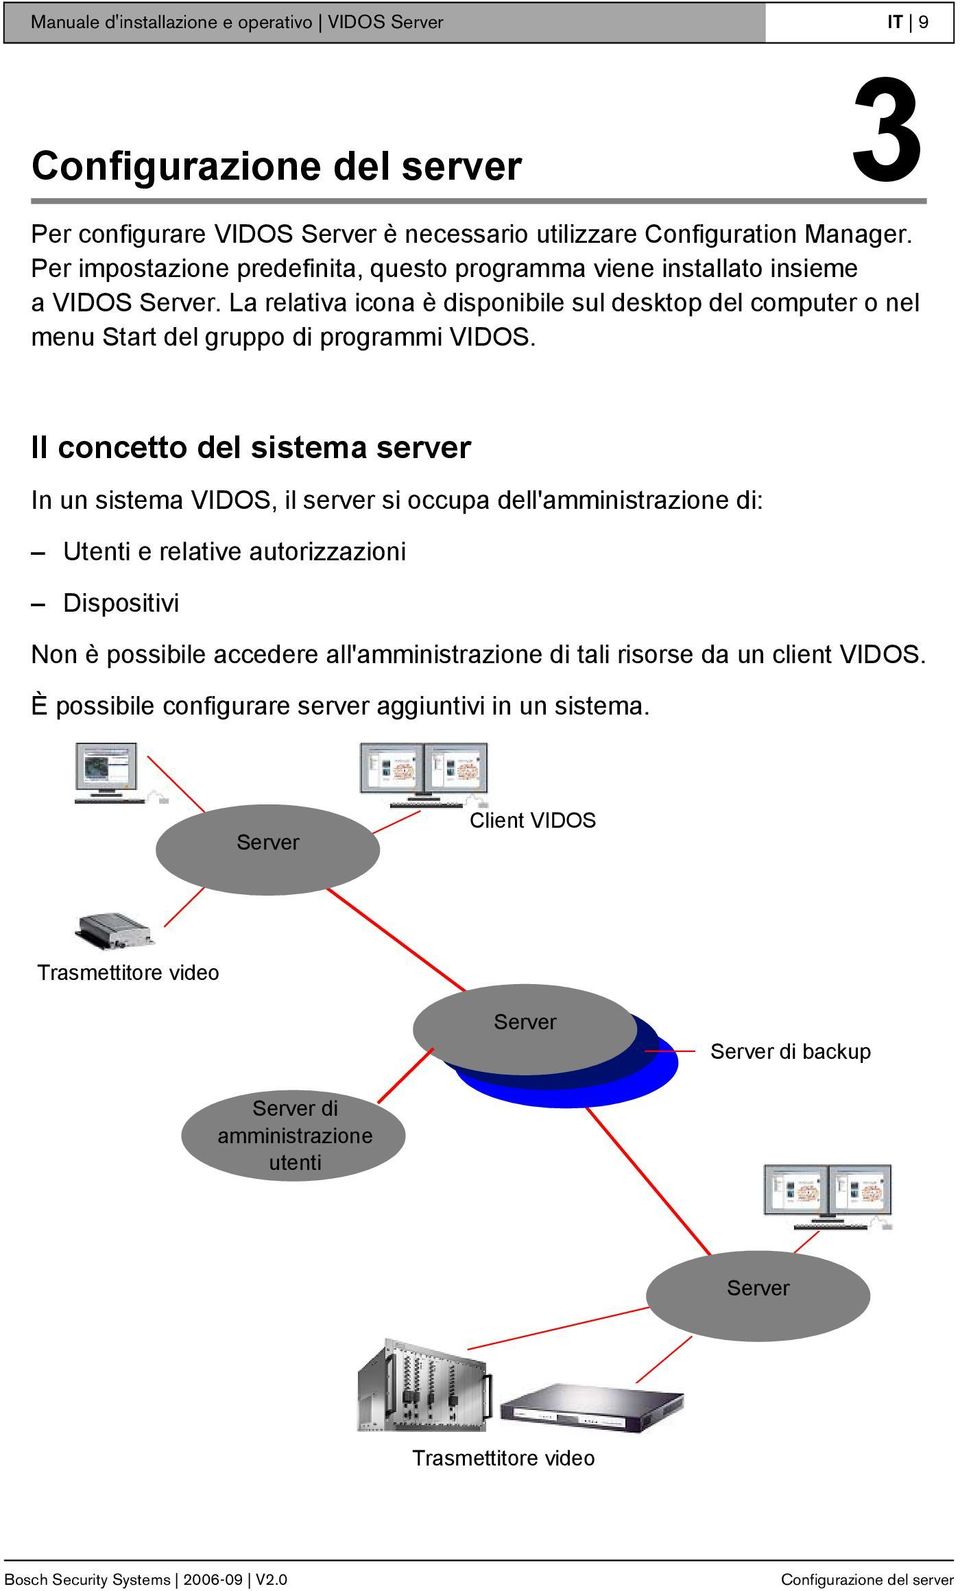 Il concetto del sistema server In un sistema VIDOS, il server si occupa dell'amministrazione di: Utenti e relative autorizzazioni Dispositivi Non è possibile accedere all'amministrazione di tali